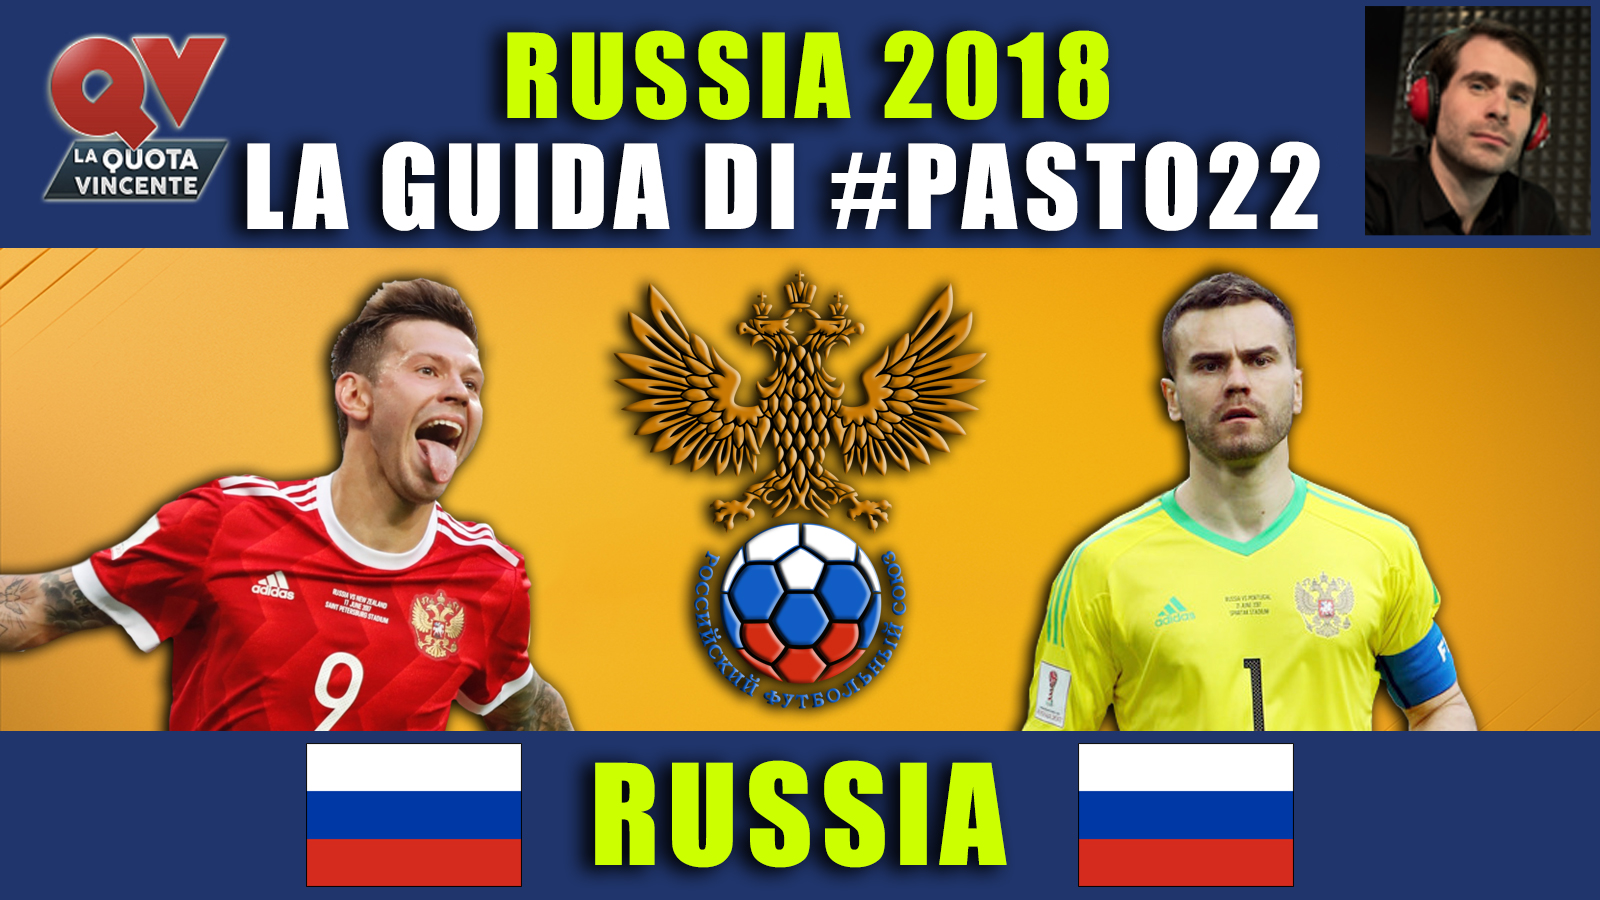 Guida Mondiali Russia 2018 Russia